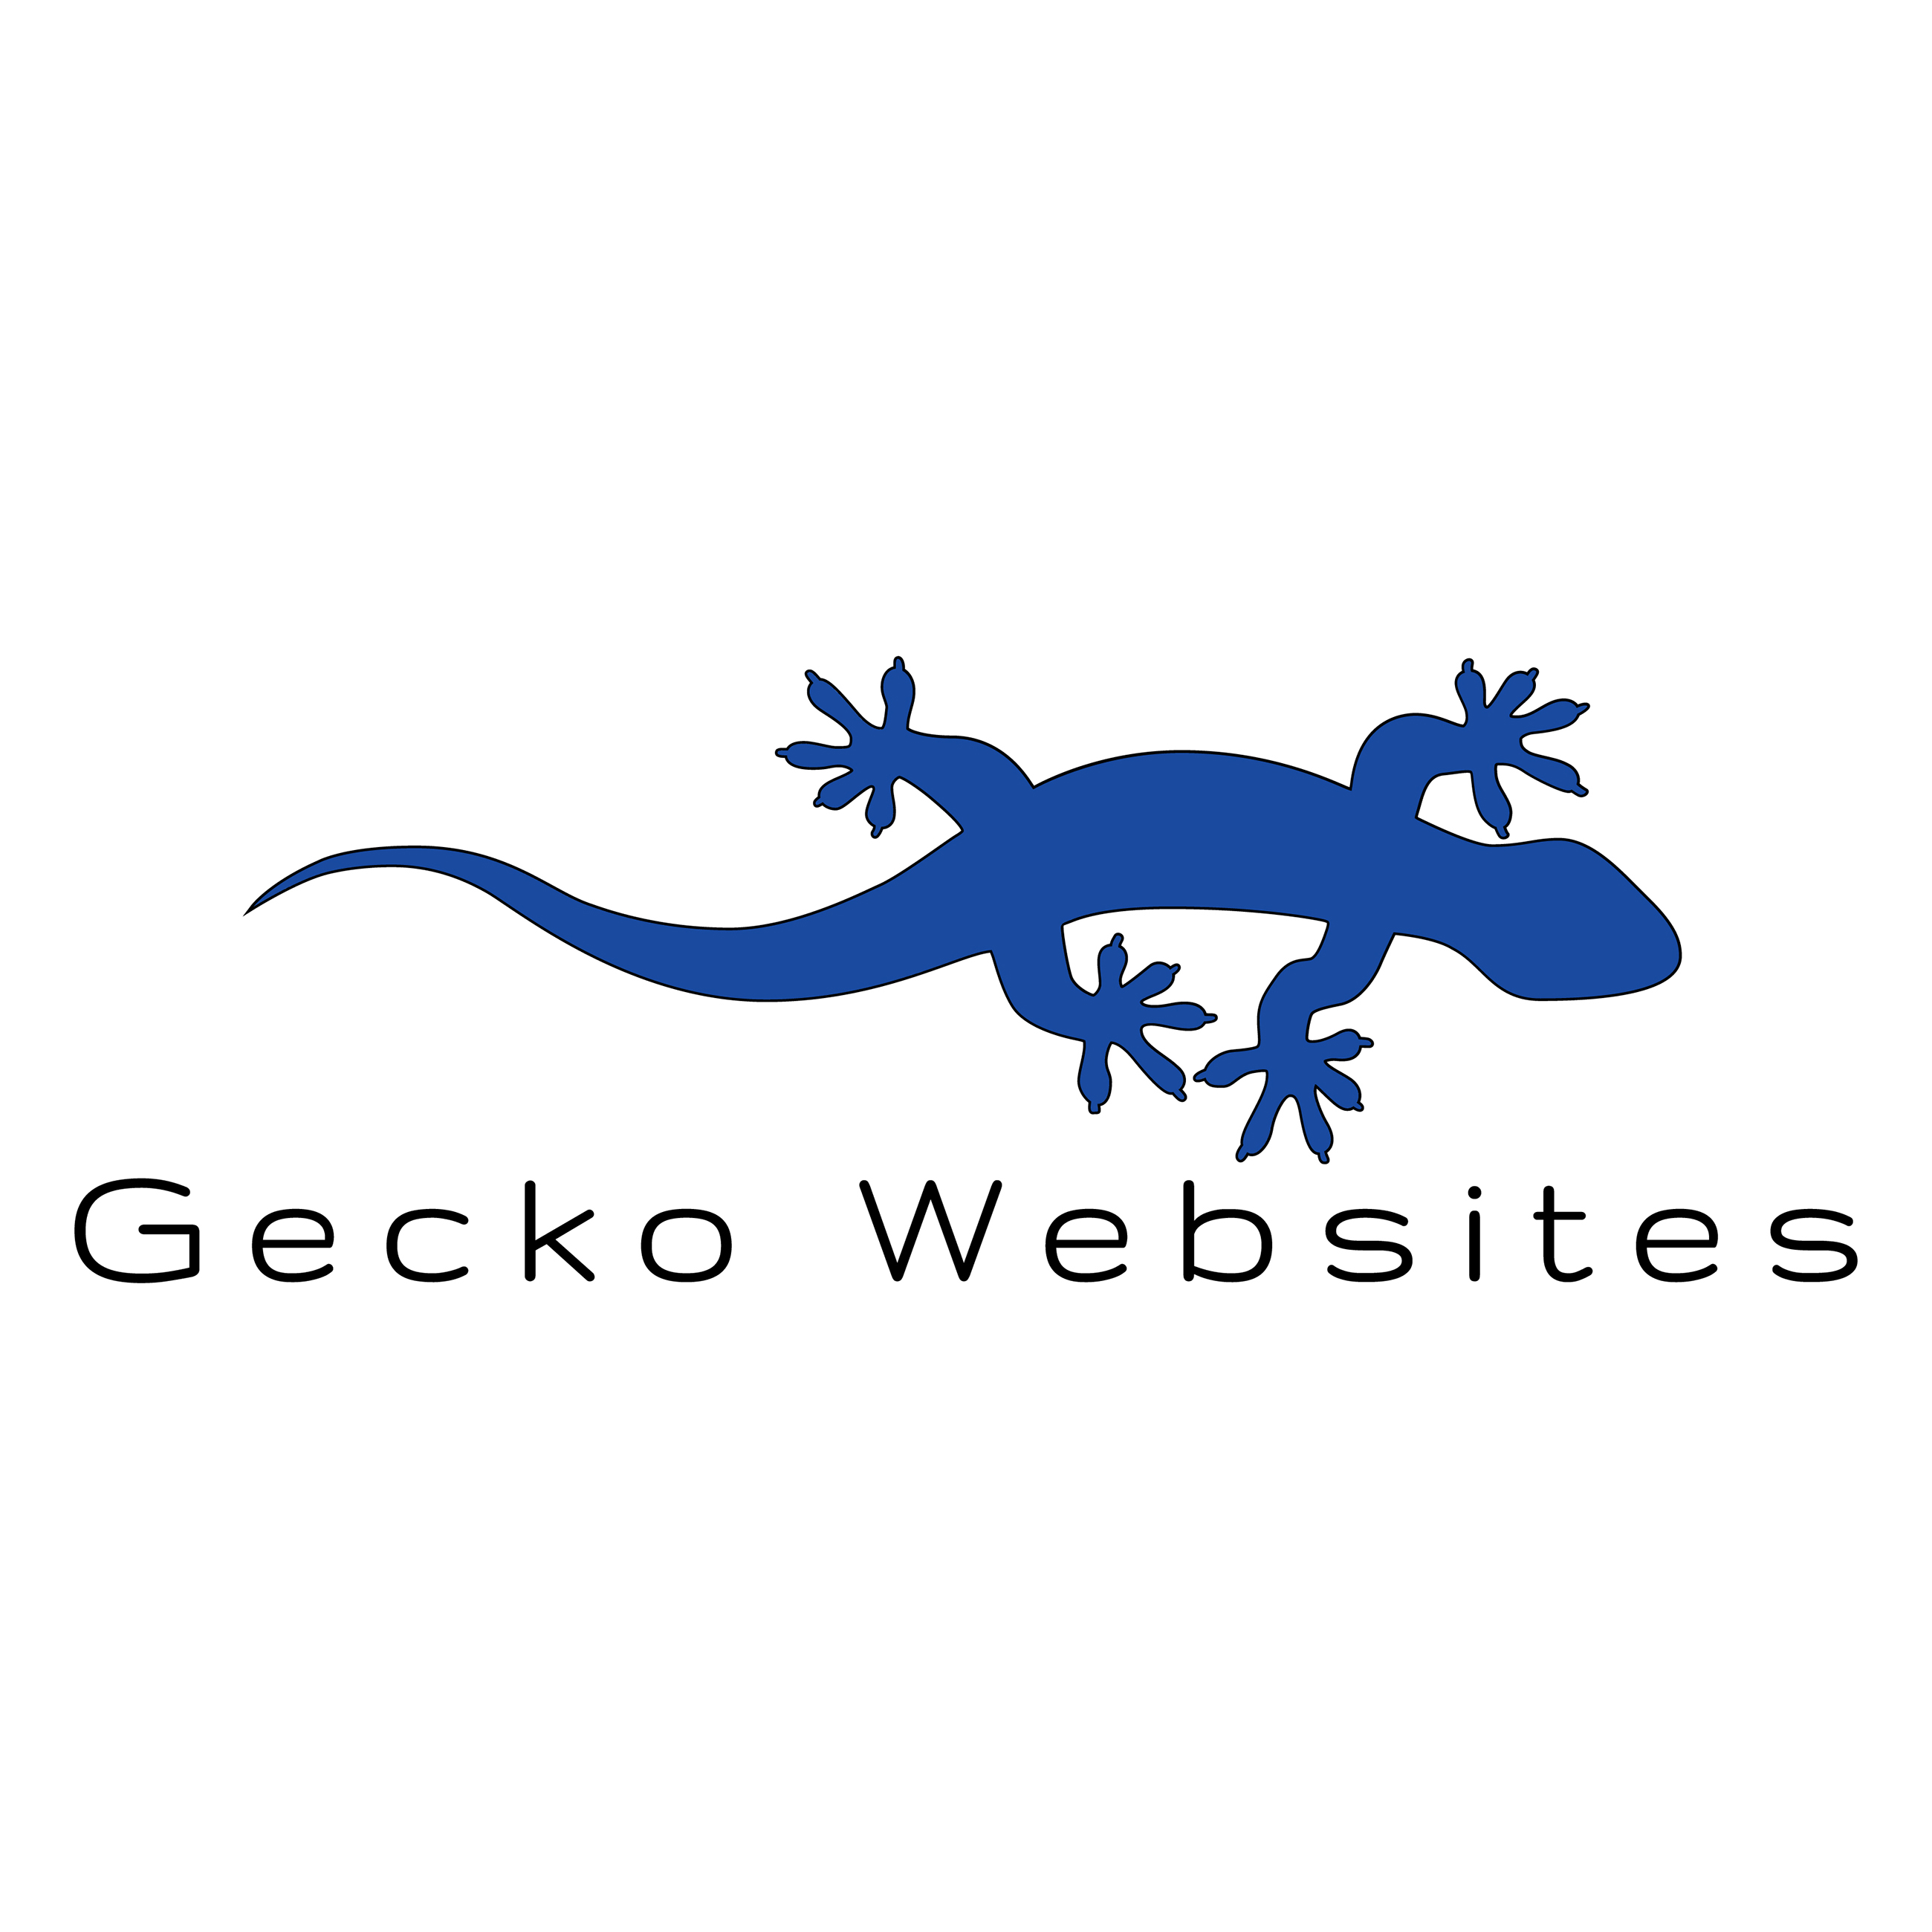 Gecko Websites SQUARE v2